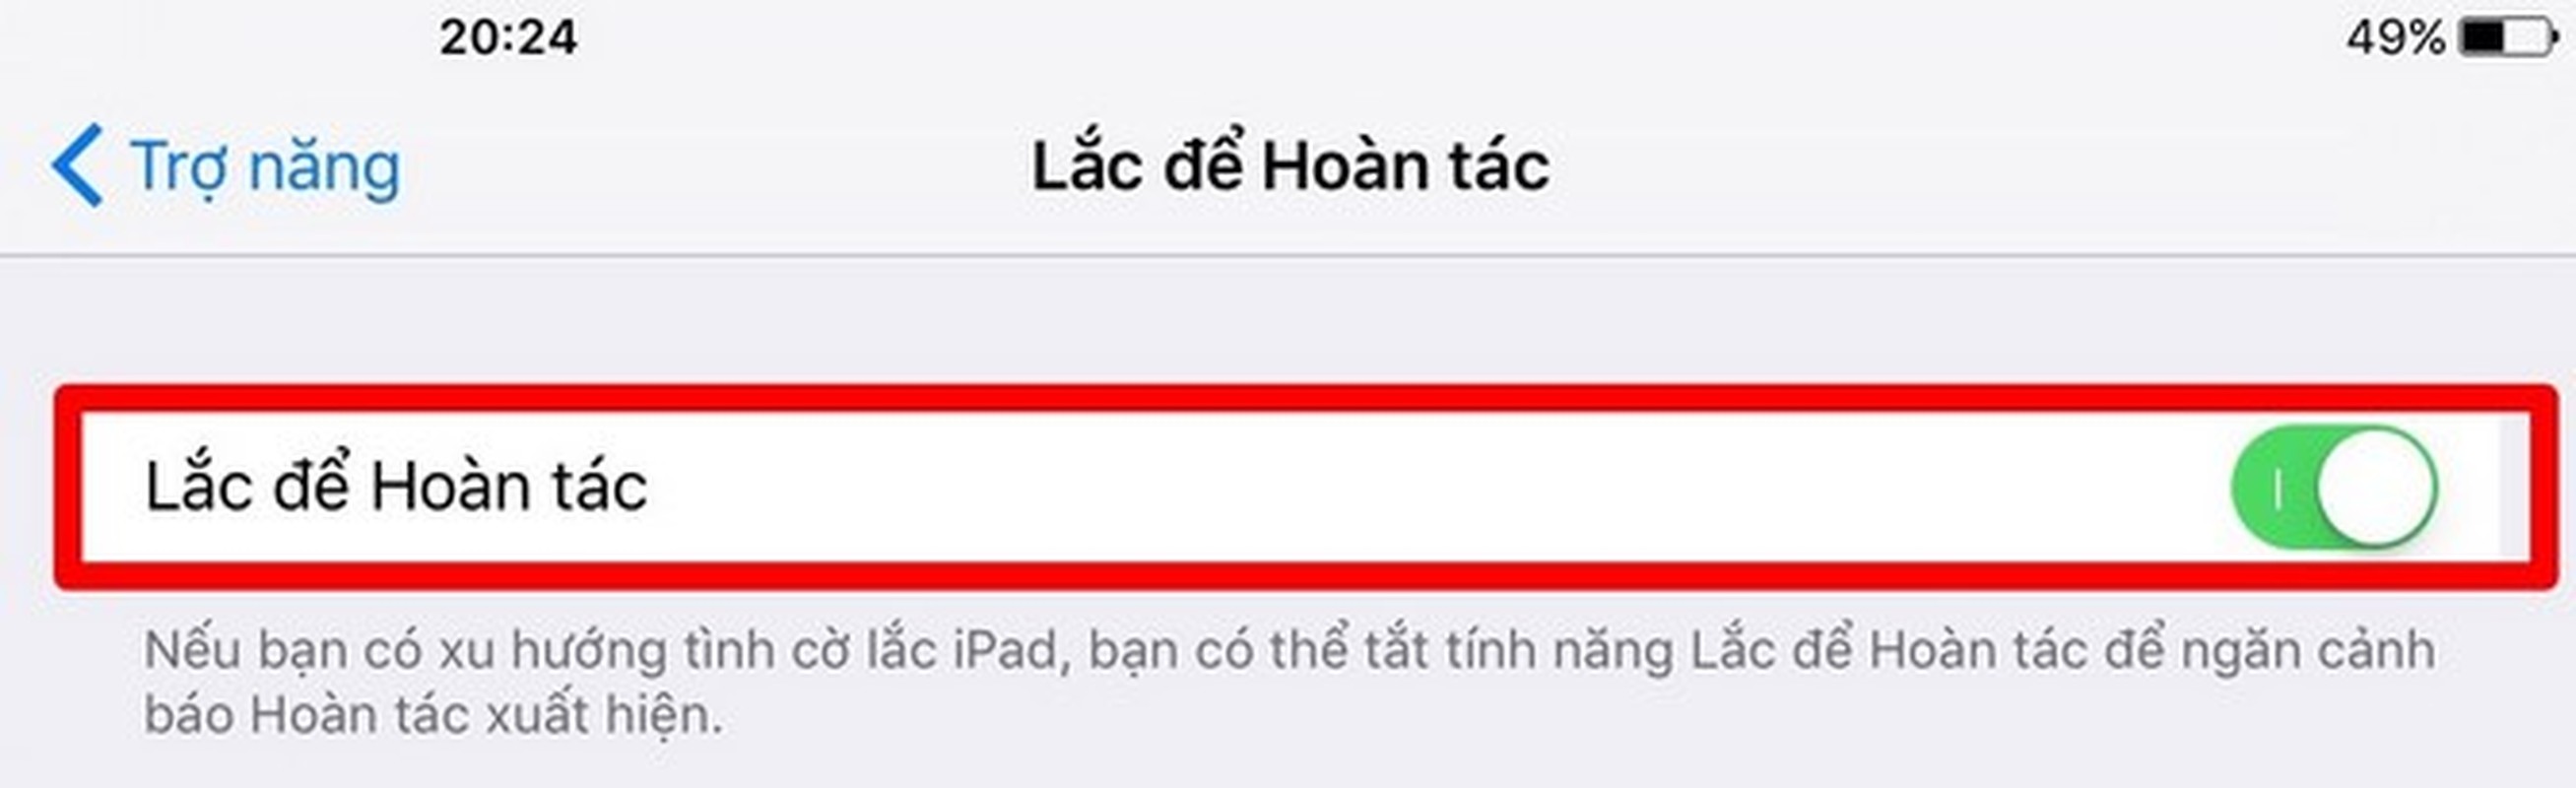 50 meo sieu huu ich an giau tren iOS 9 (phan 2)-Hinh-11